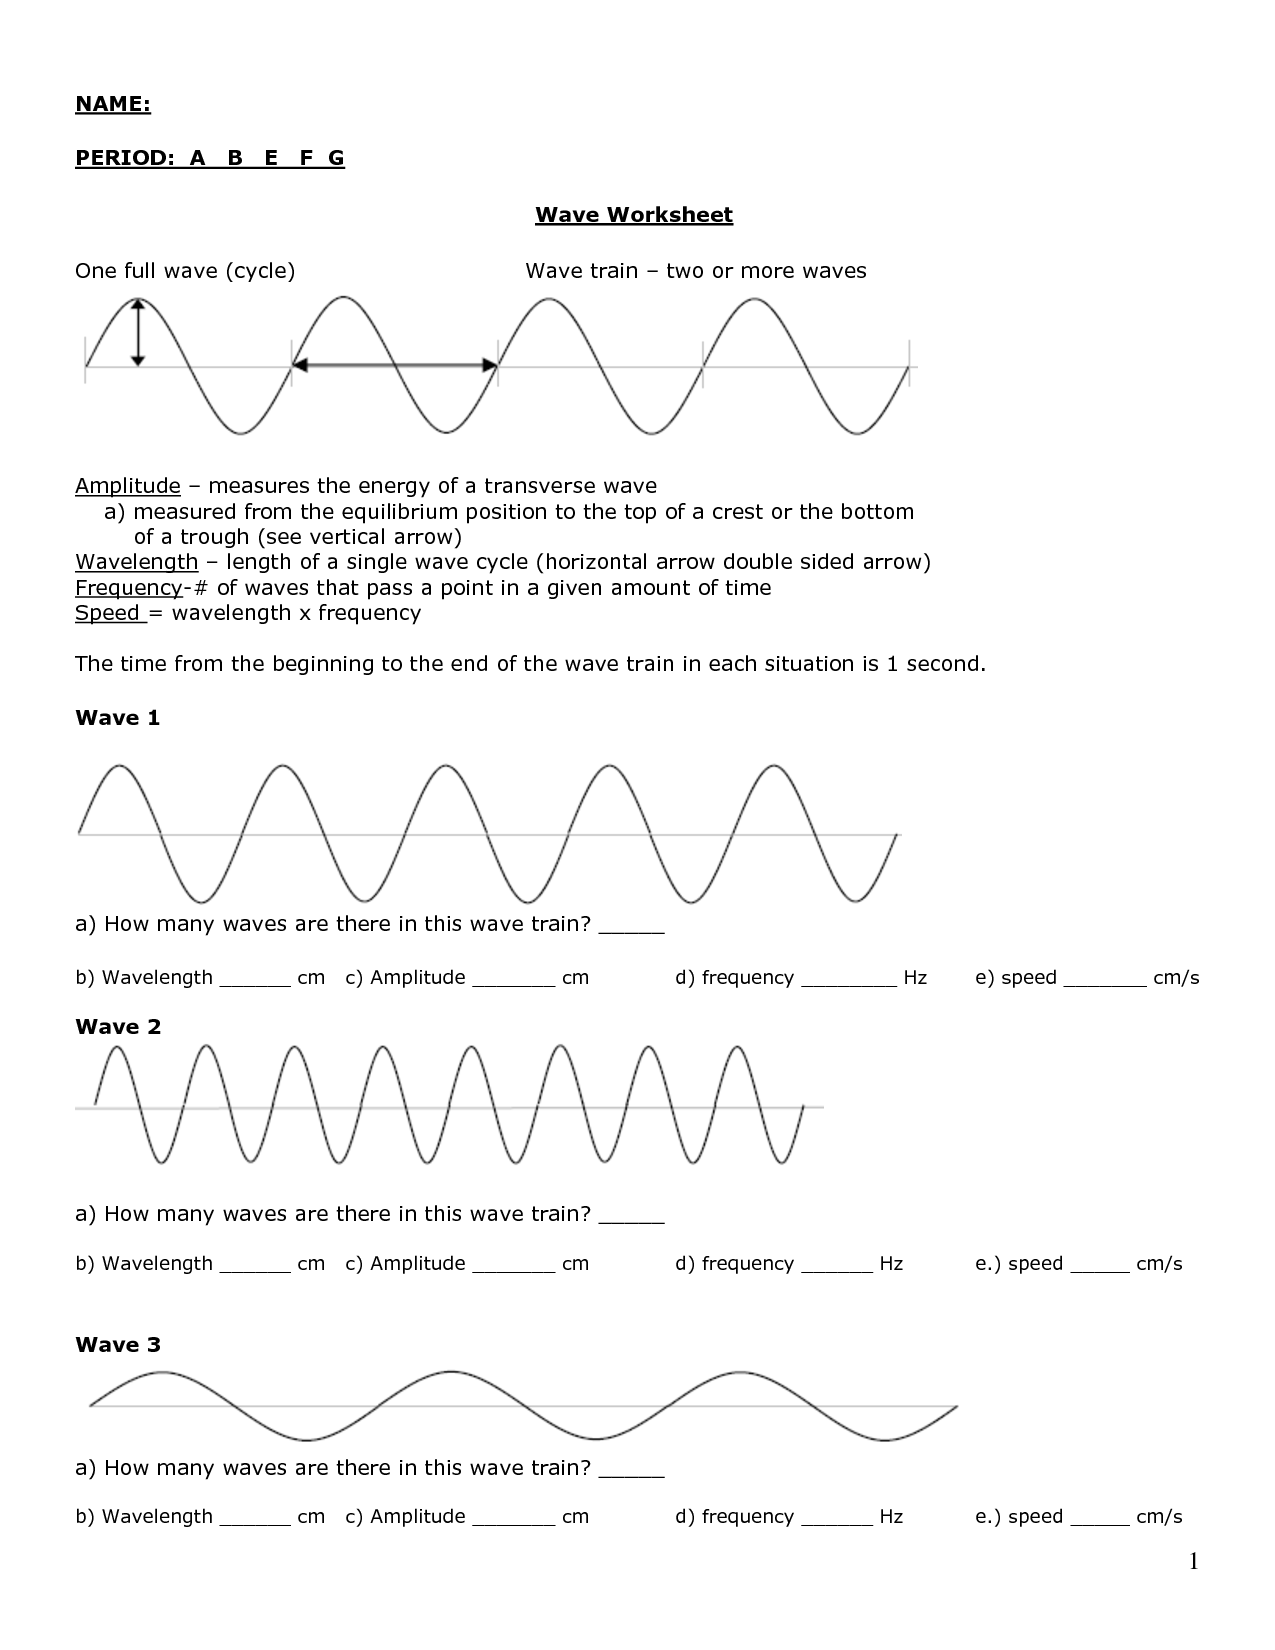 16-best-images-of-hw-worksheet-labeling-waves-answers-labeling-waves-worksheet-answer-key